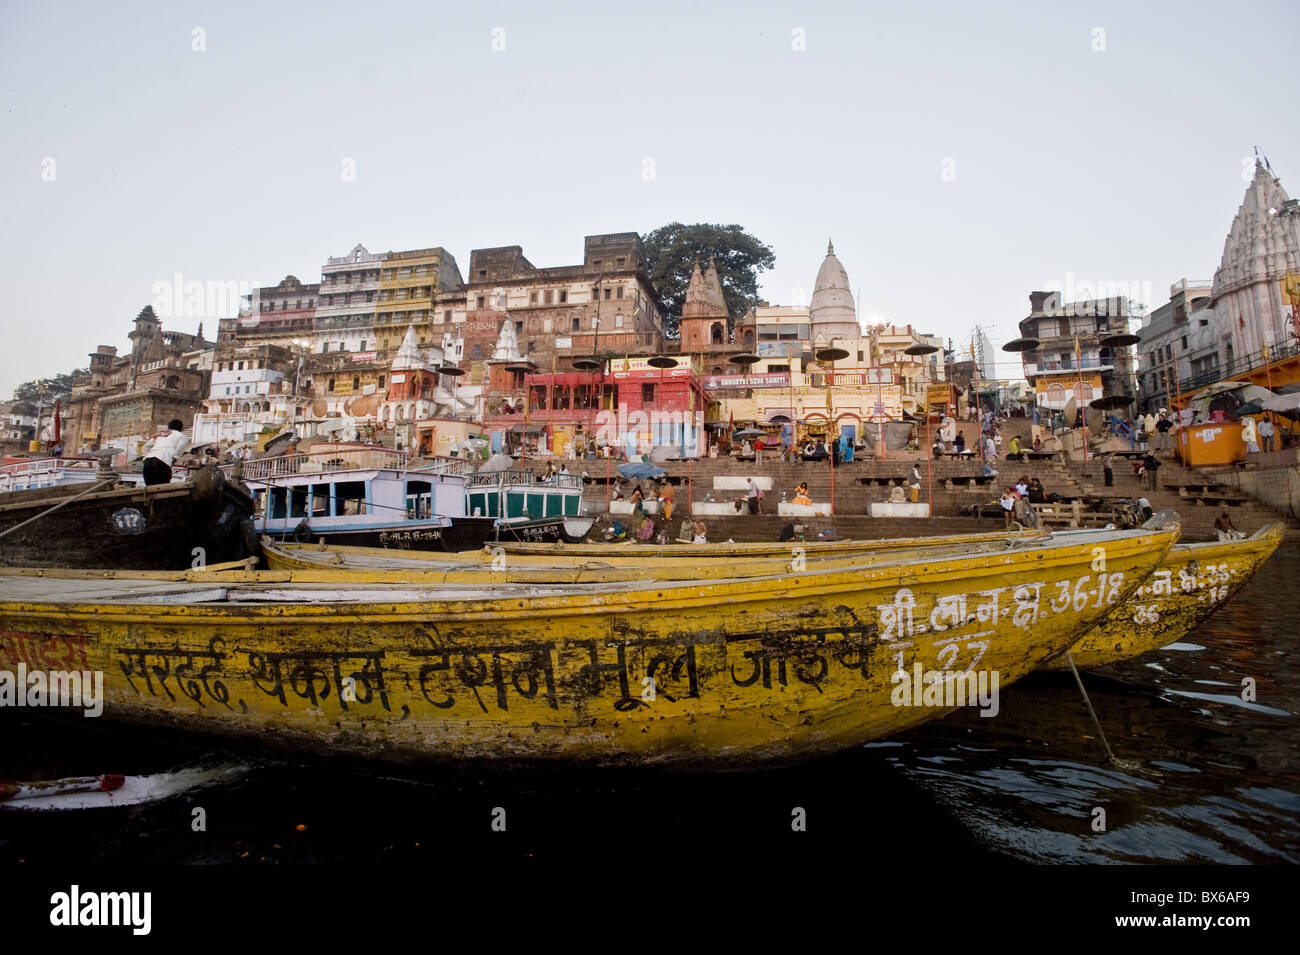 Vue générale de la main ghat de Varanasi, Uttar Pradesh, Inde, Asie Banque D'Images